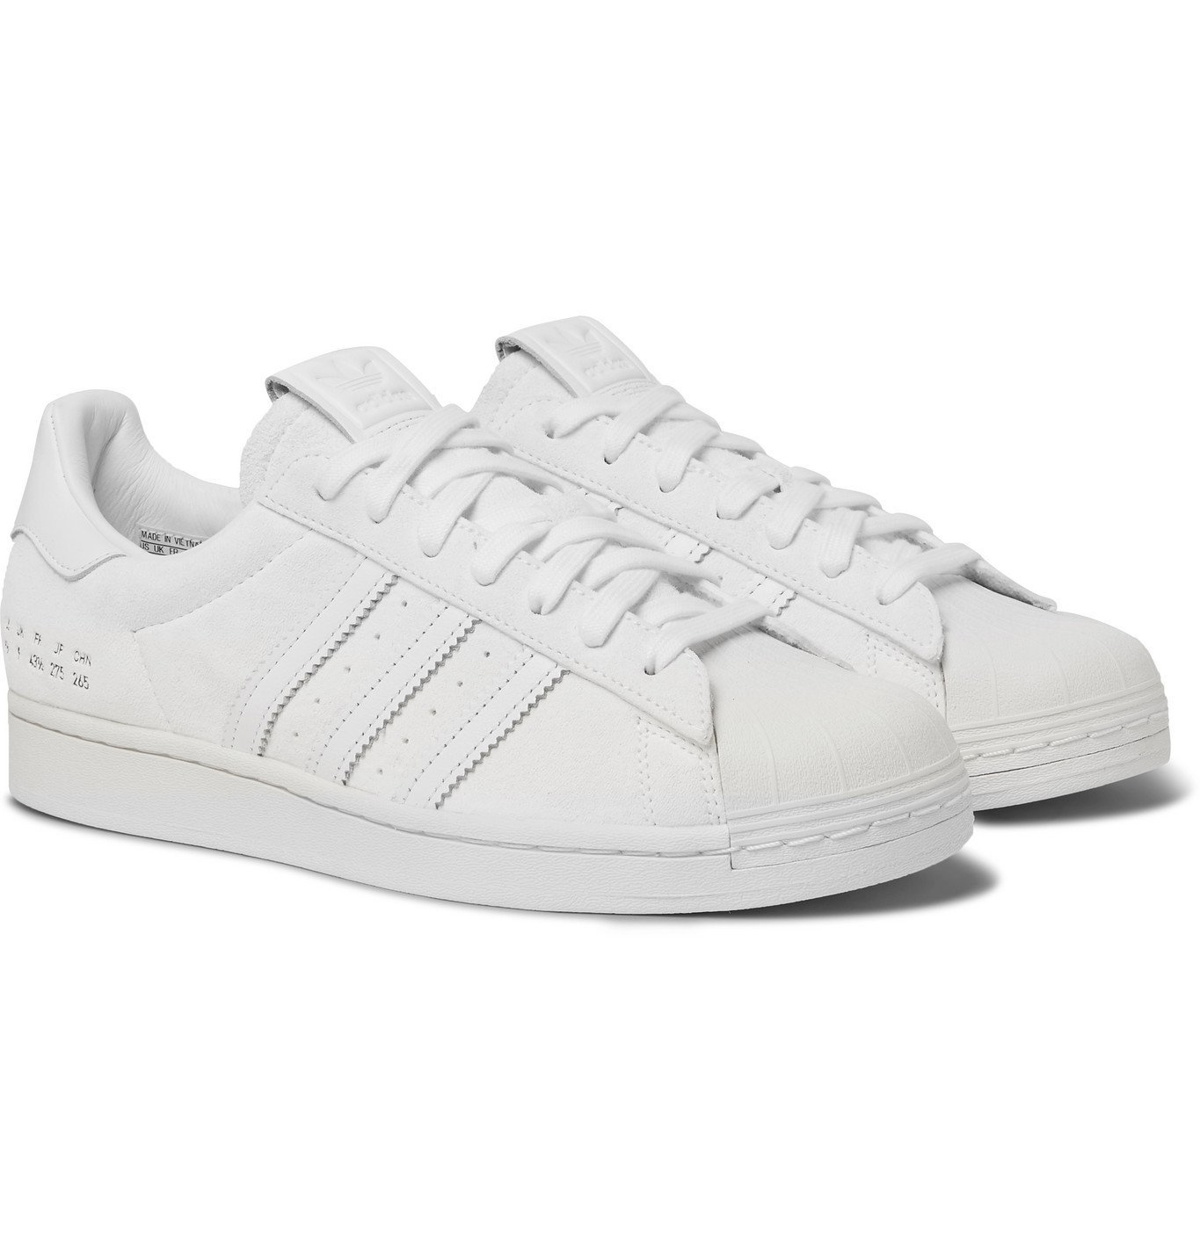 ADIDAS ORIGINALS Premium Basics Superstar Leather-Trimmed Suede Sneakers - White adidas Originals